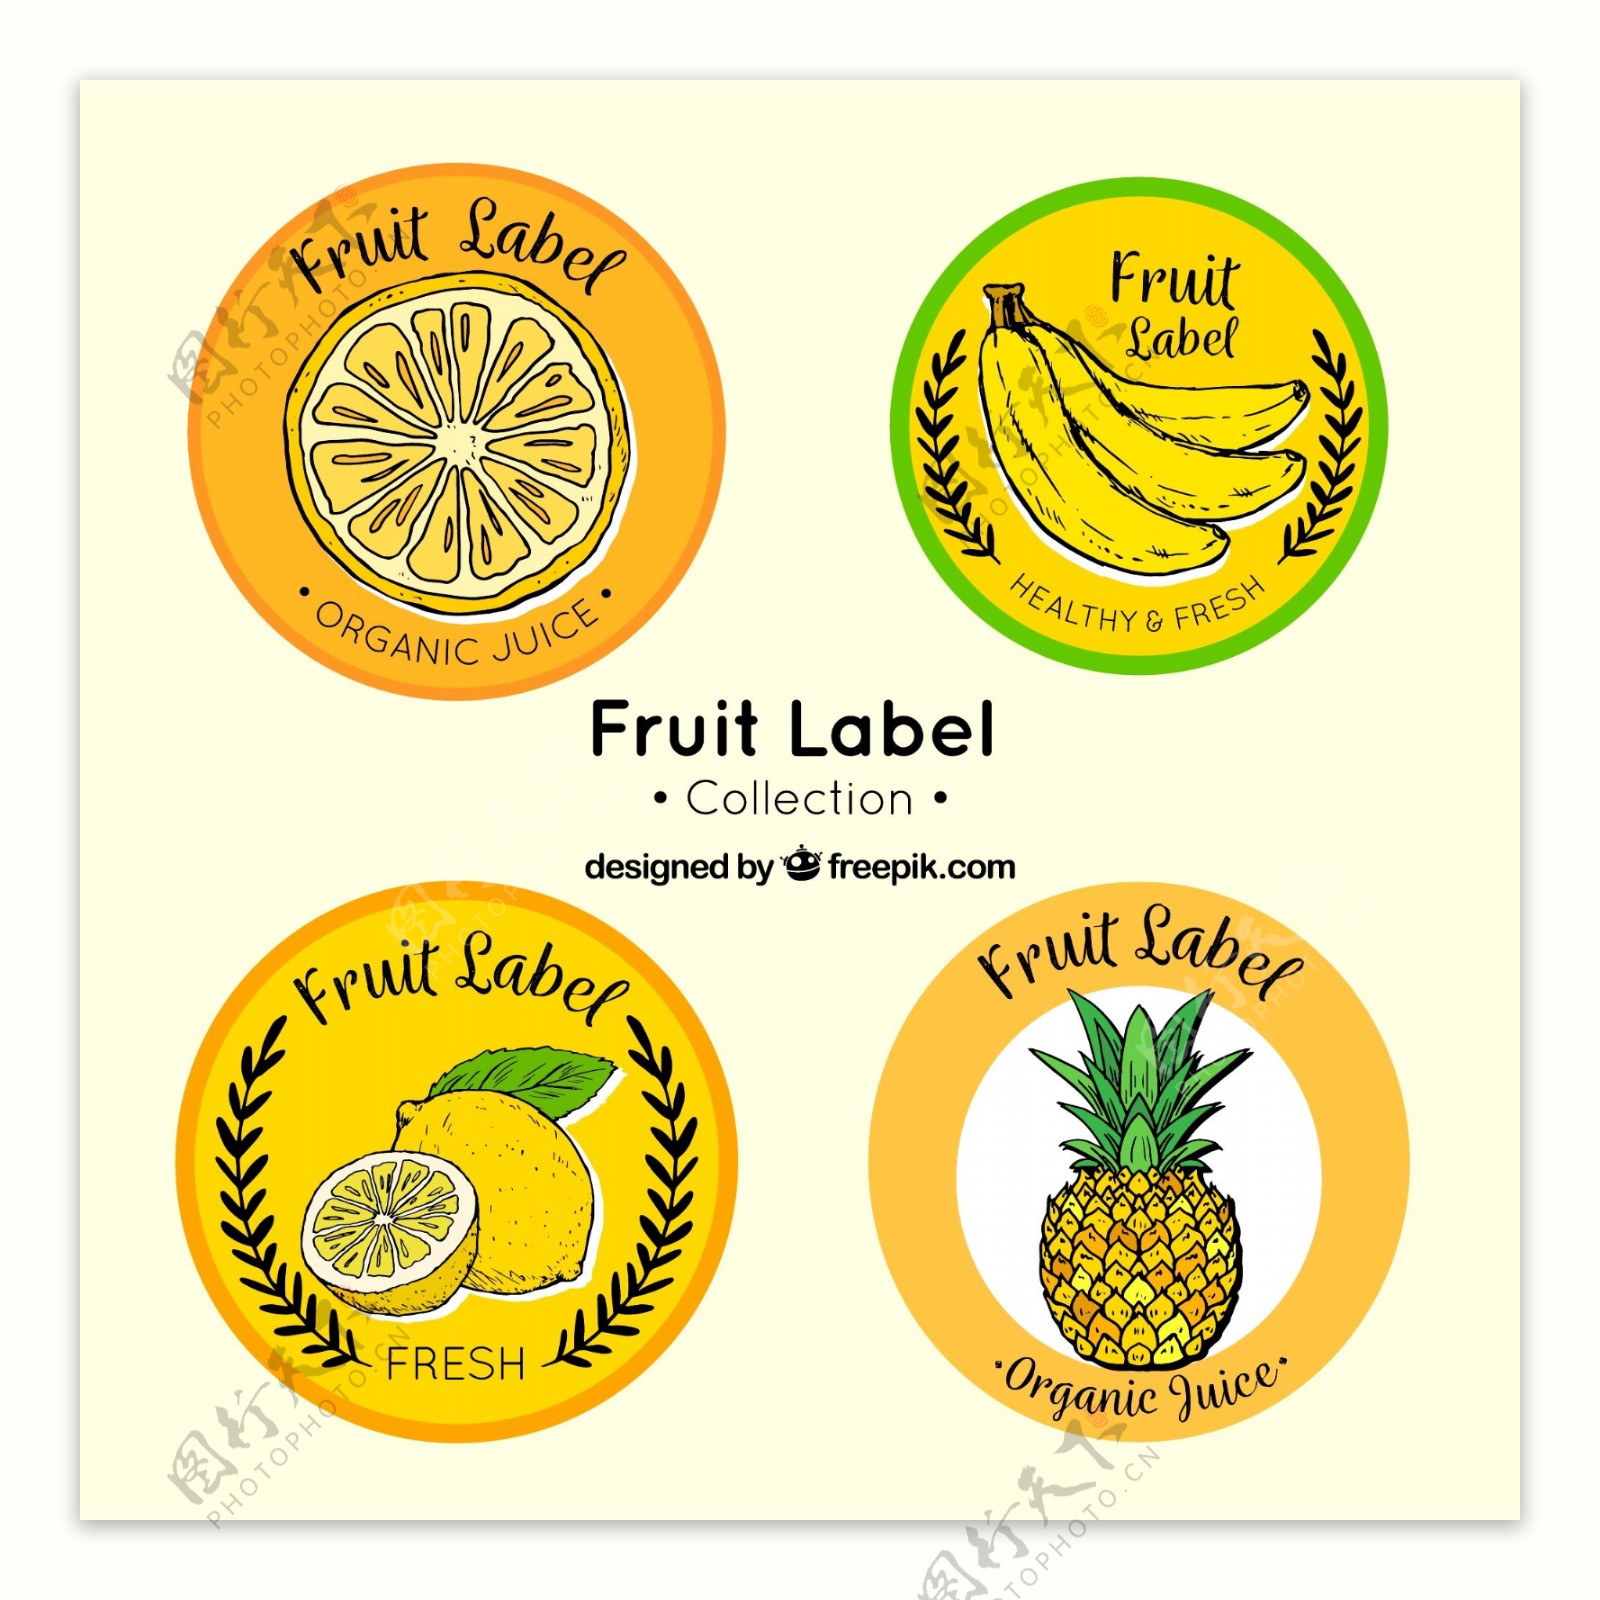 各种手绘圆形水果标签矢量素材